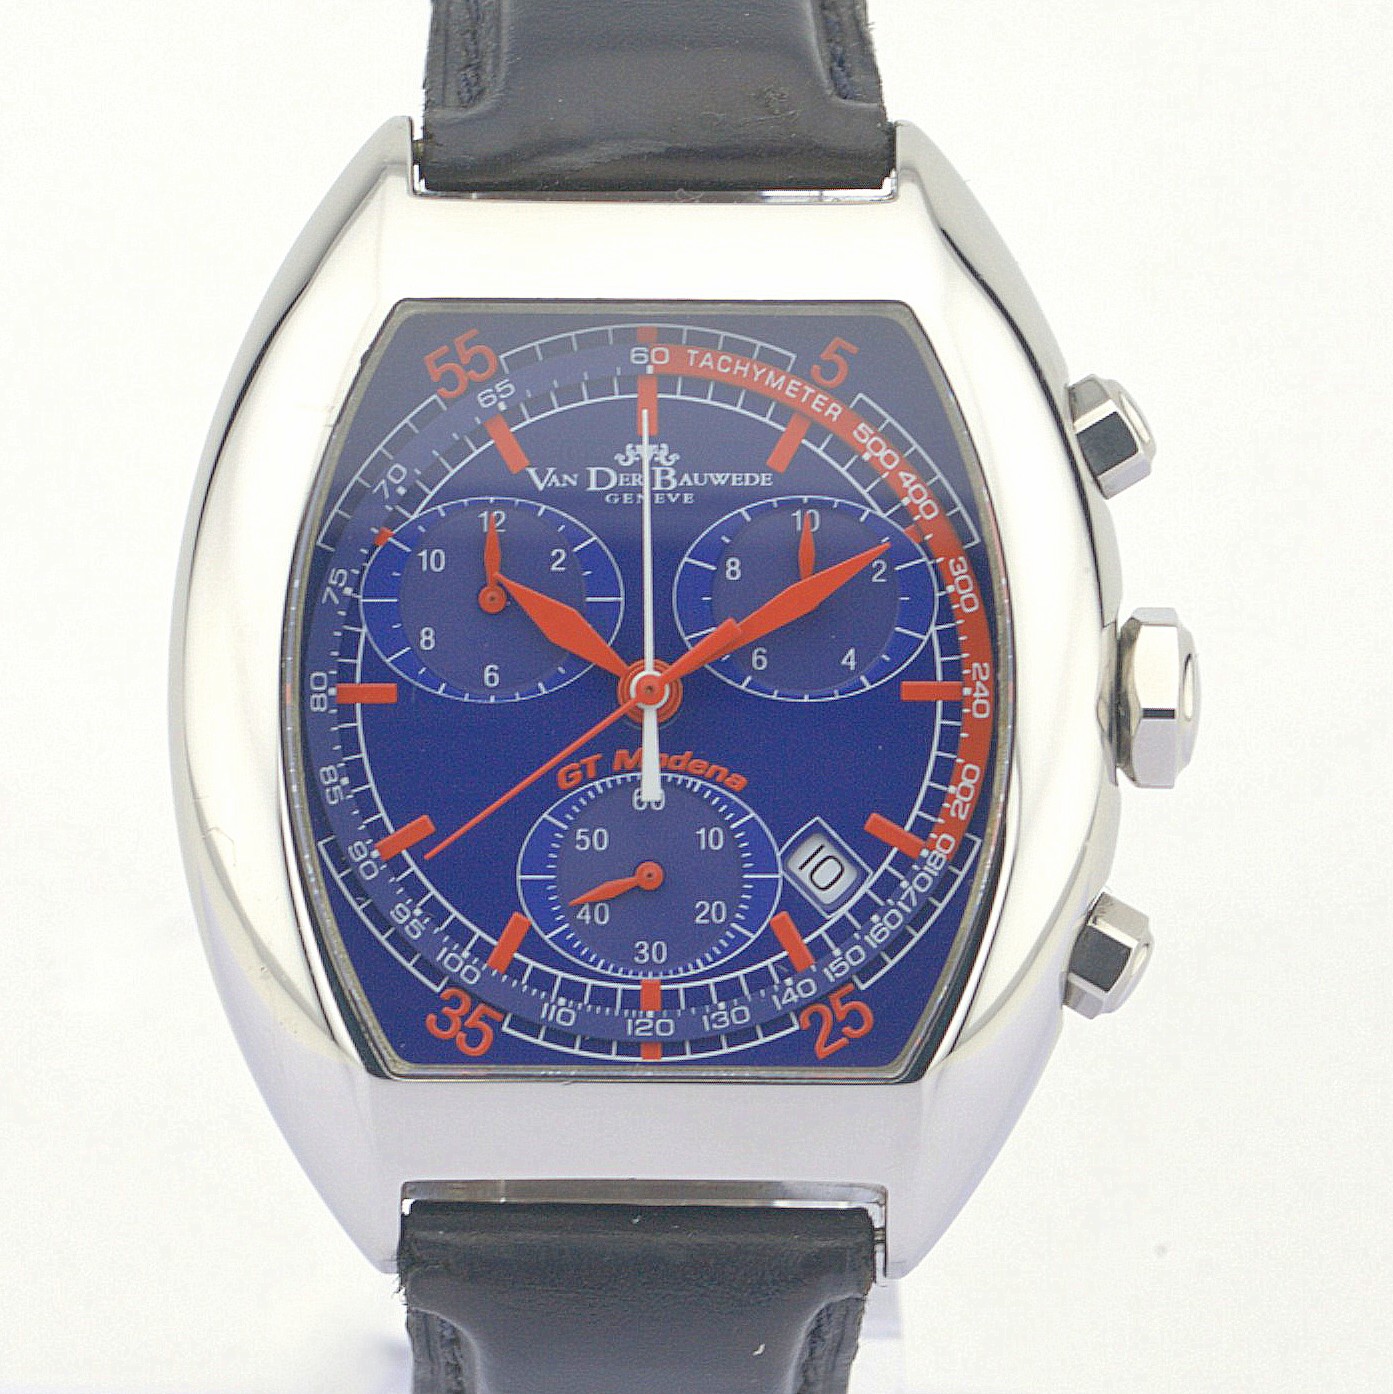 Van Der Bauwede / GT MODENA - Gentleman's Steel Wrist Watch